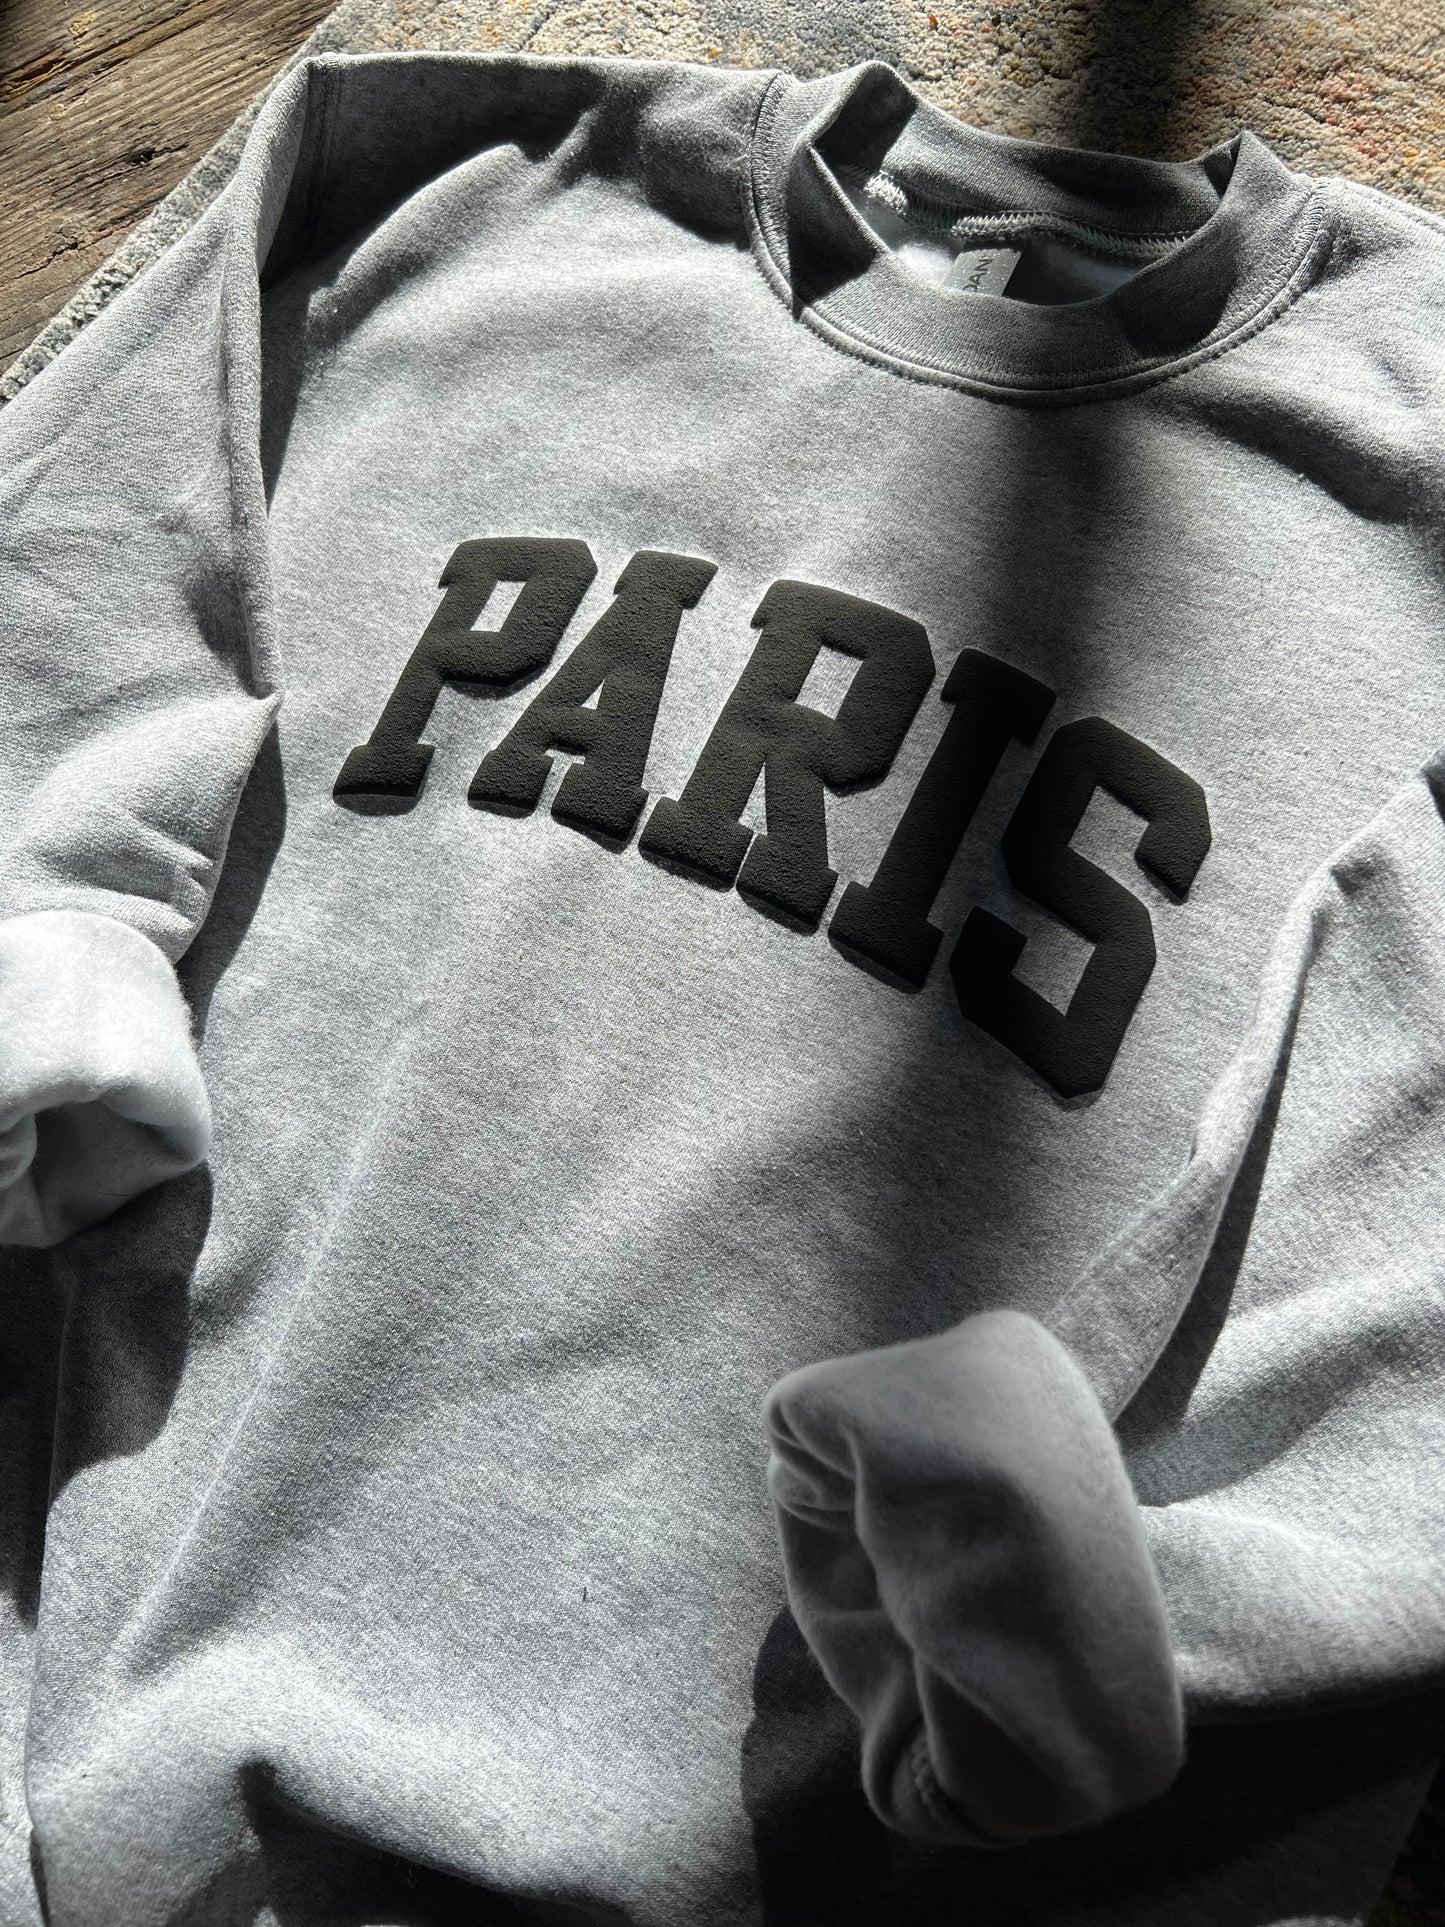 Paris Pullover